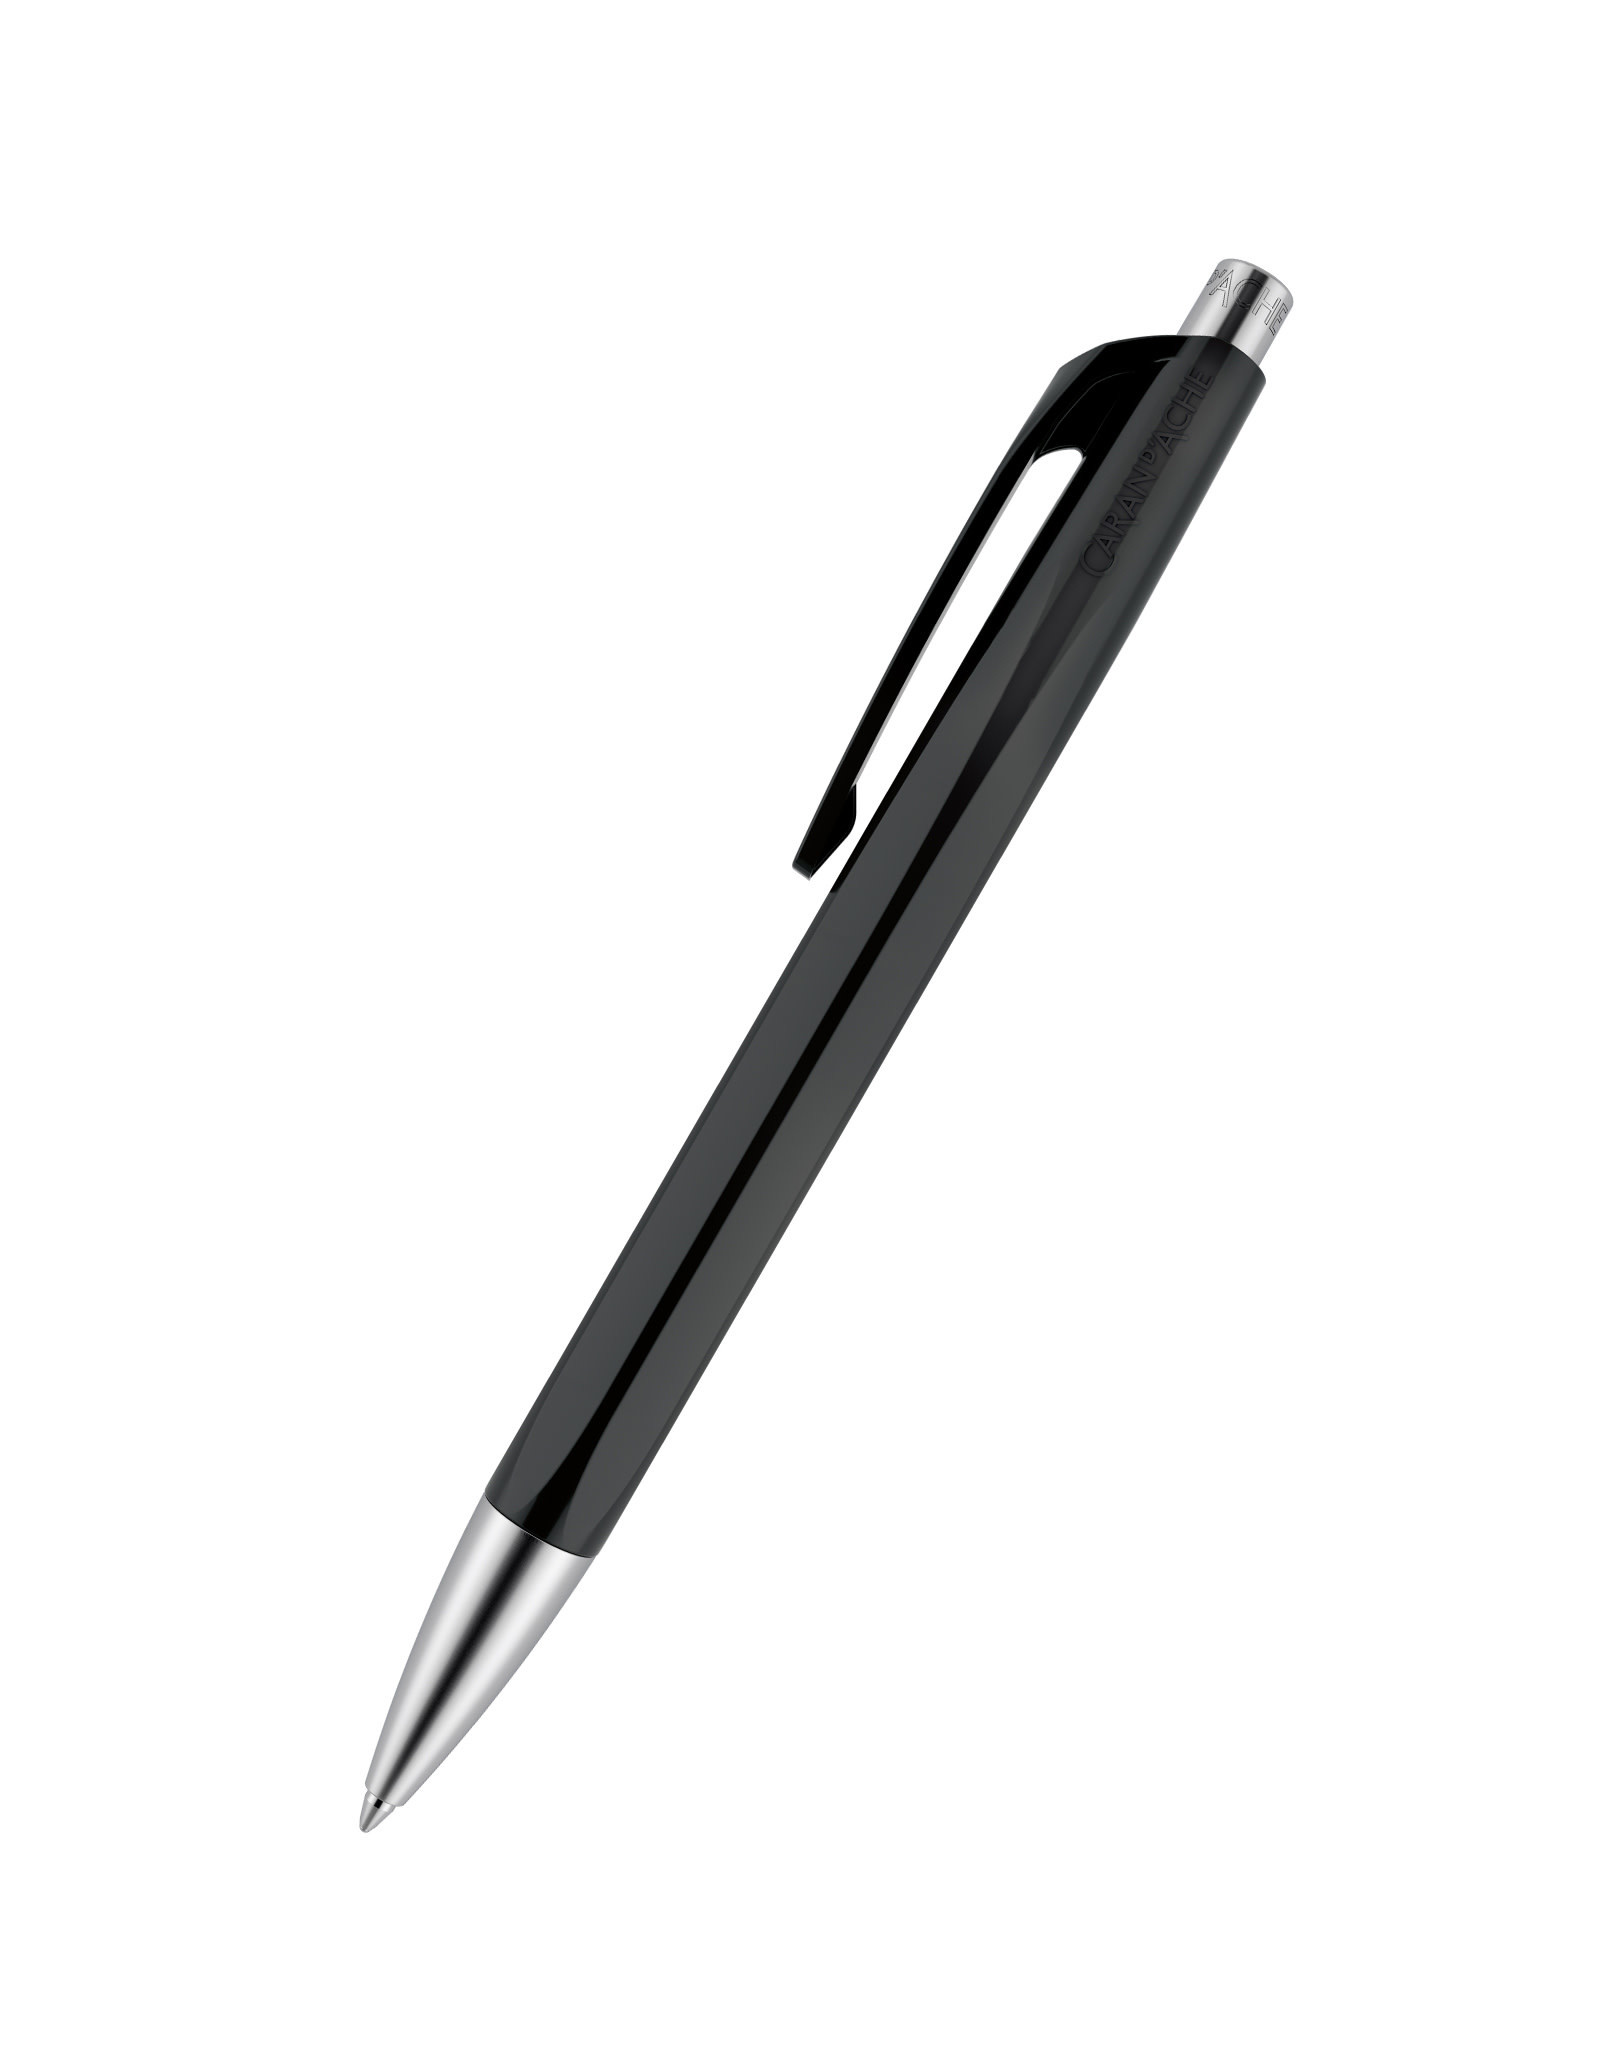 Caran d'Ache Caran D’Ache 888 Infinite Ballpoint Pen, Black